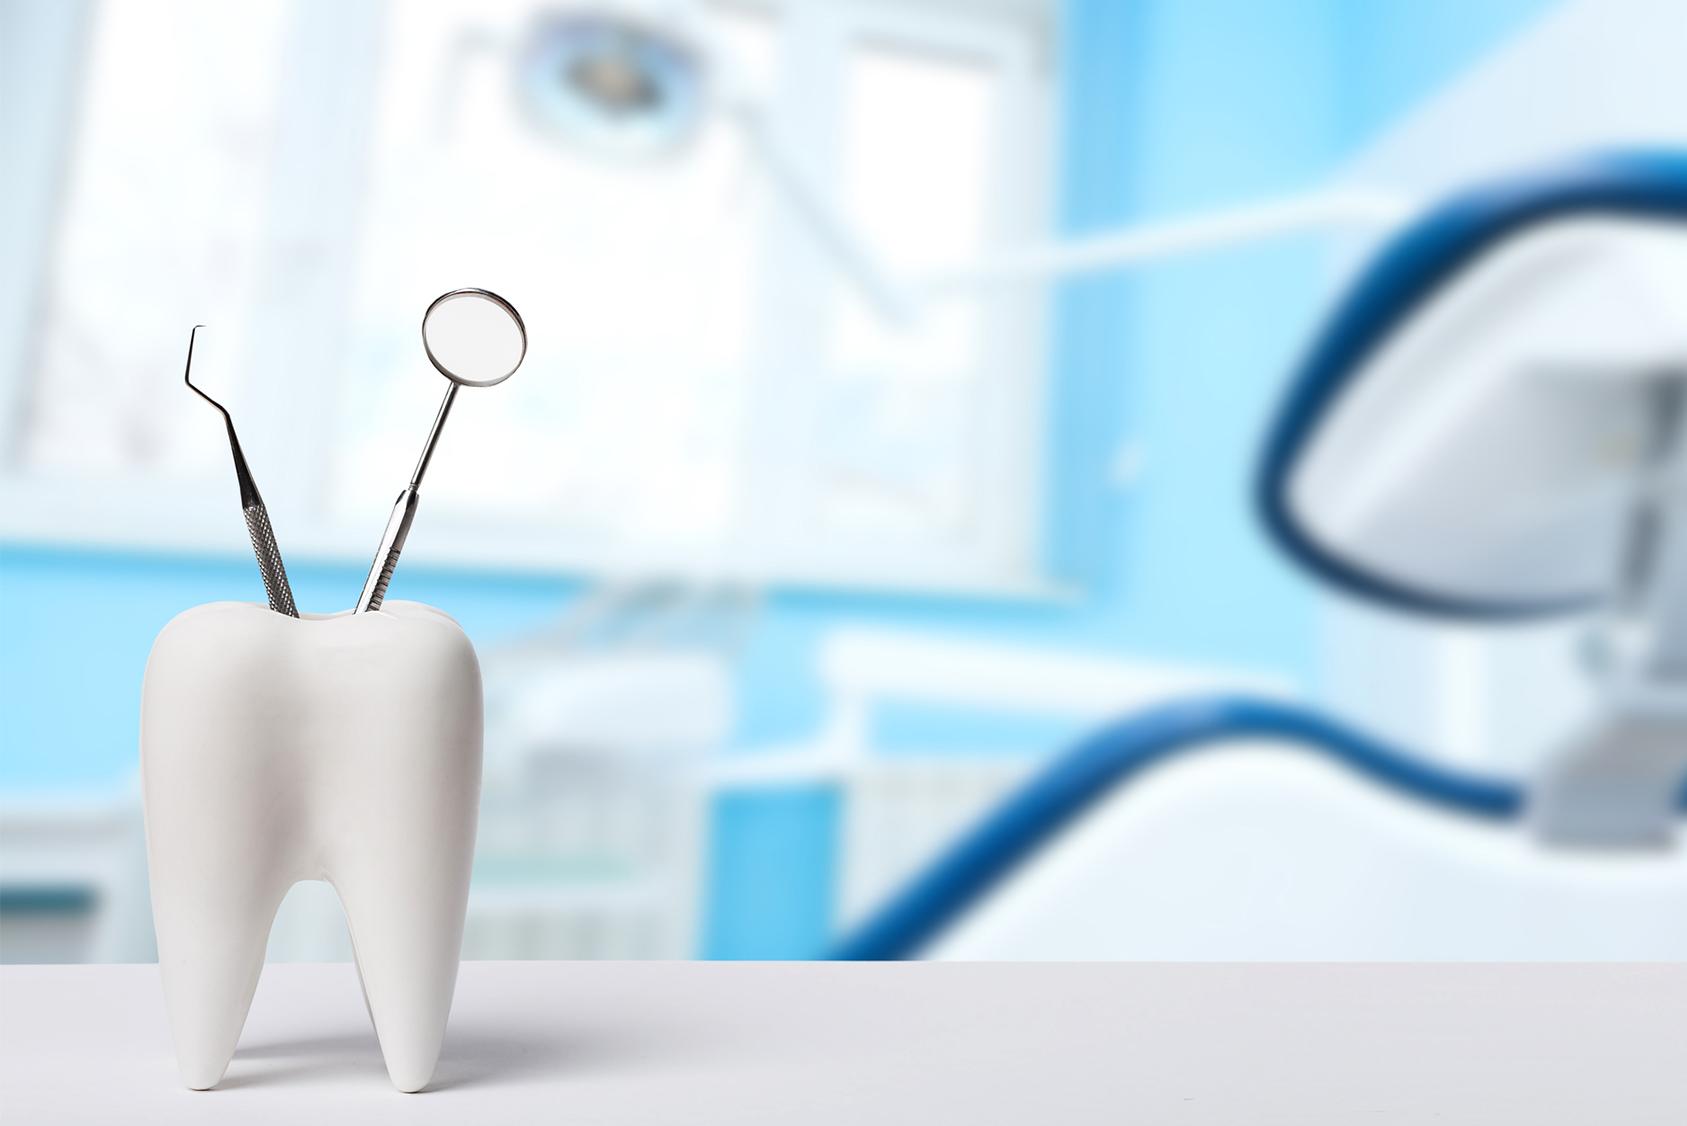 Narzędzia dentystyczne w kubeczku